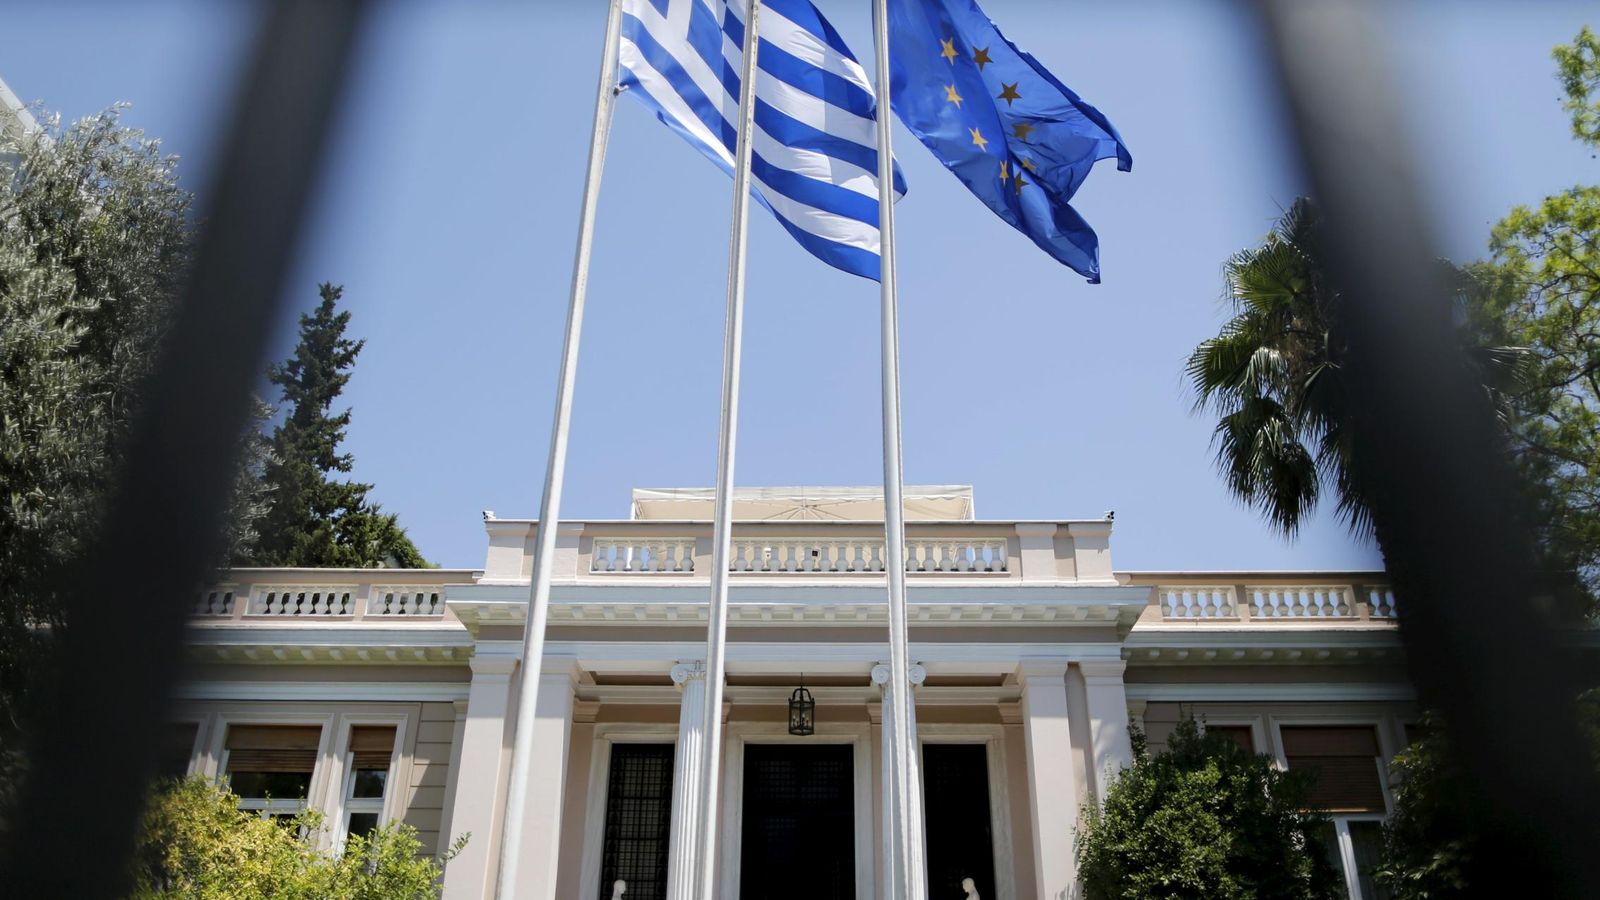 Foto: Oficinas del primer ministro en Atenas (Reuters)